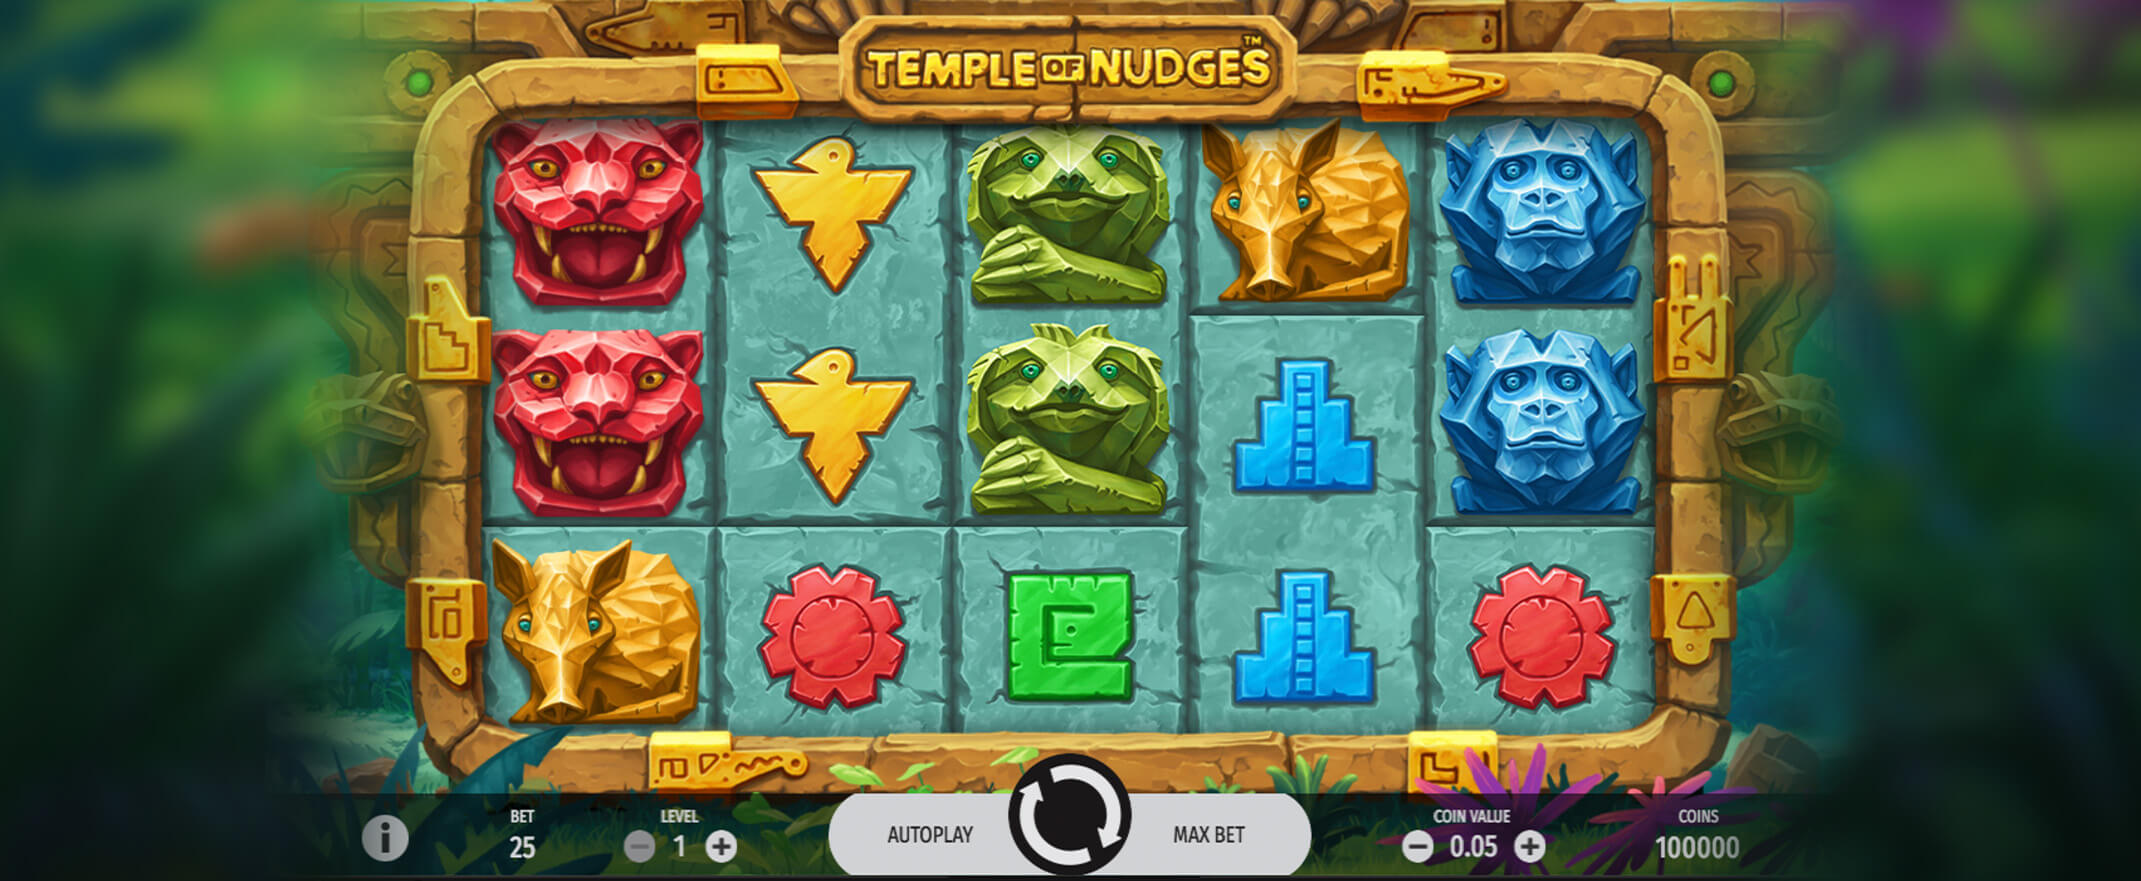 Temple of Nudges Spielautomat von NetEnt